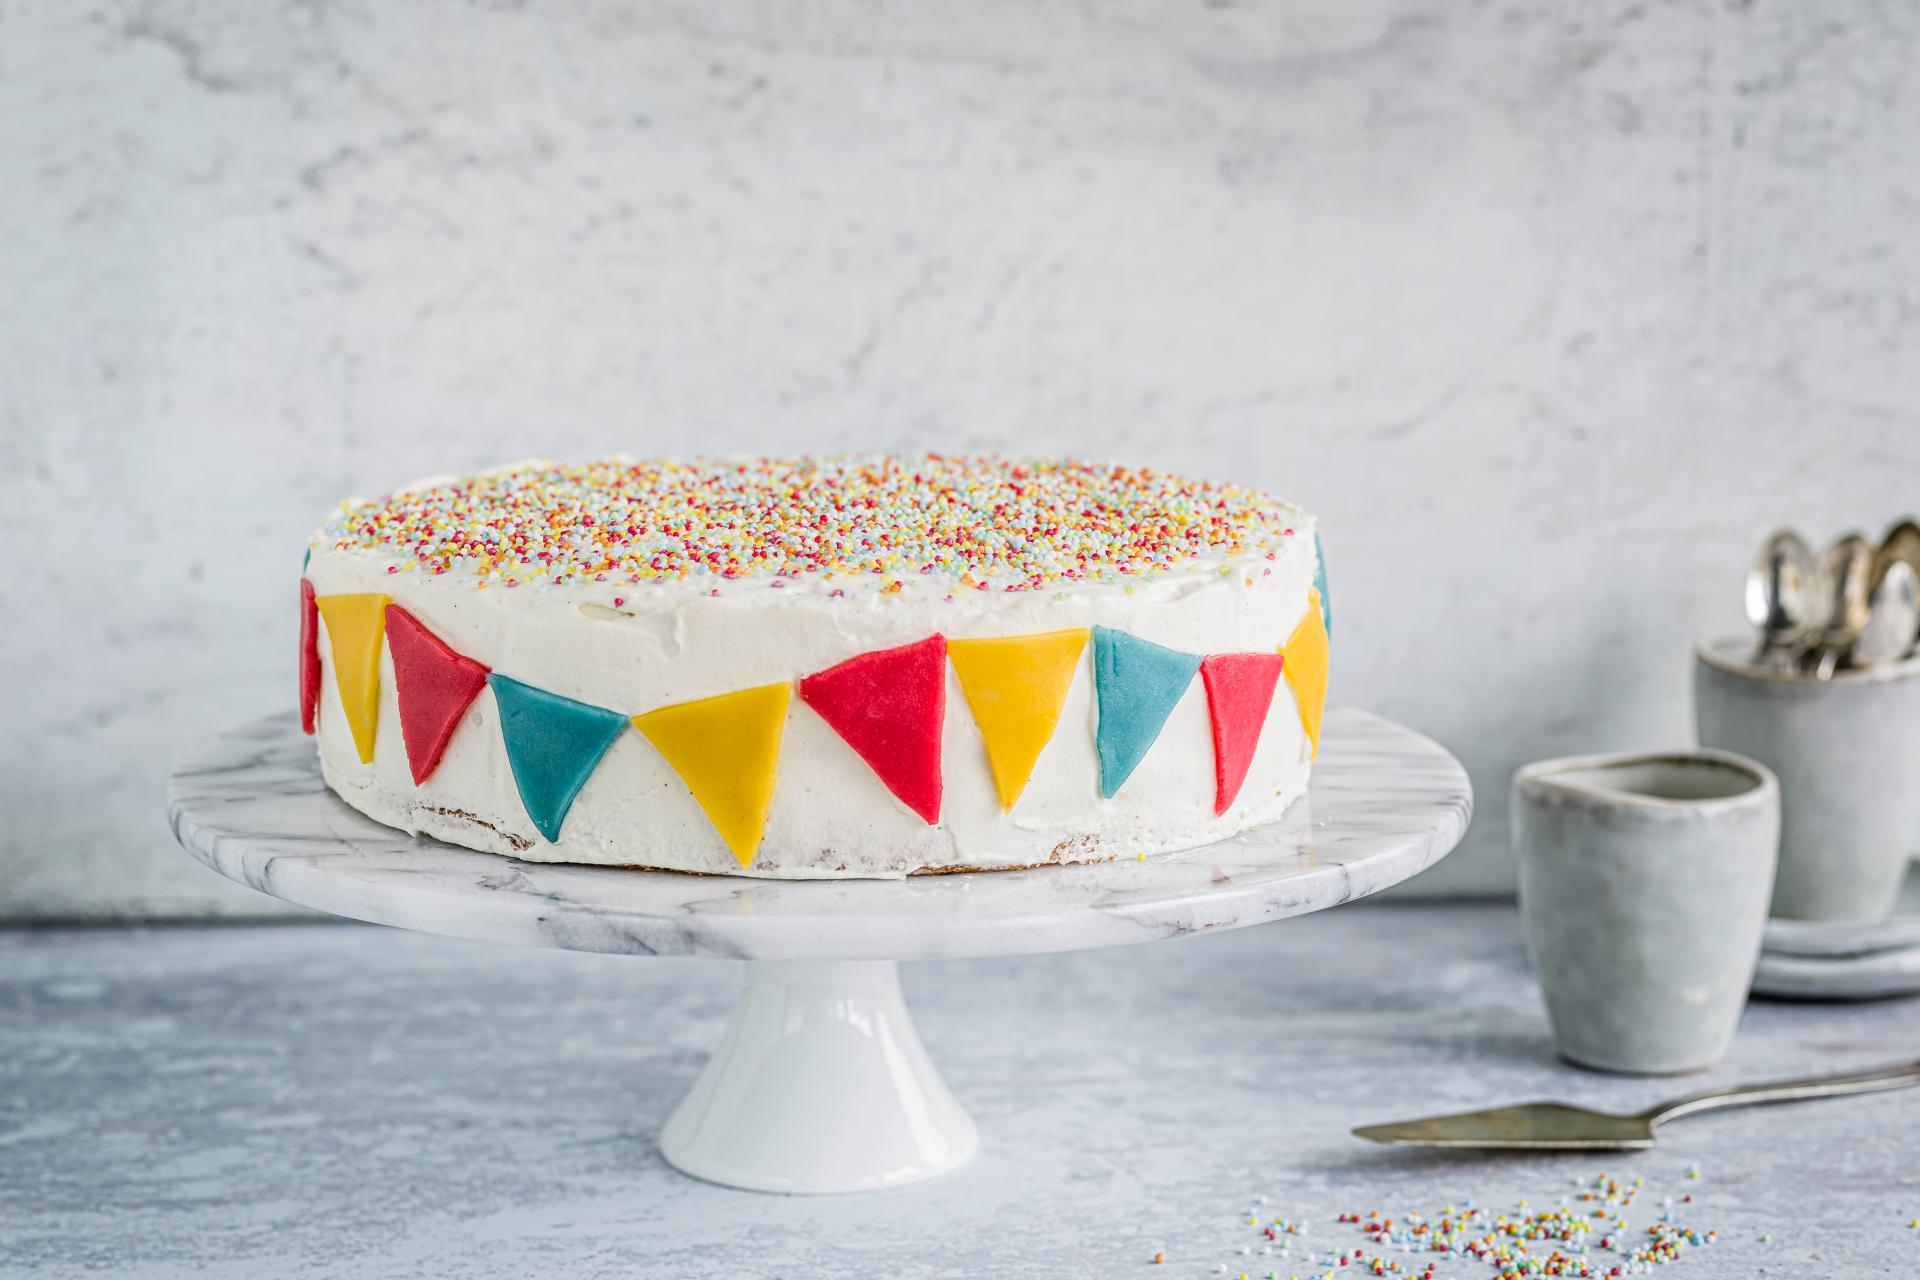 Comment décorer un gâteau d'anniversaire ? - Magazine Avantages